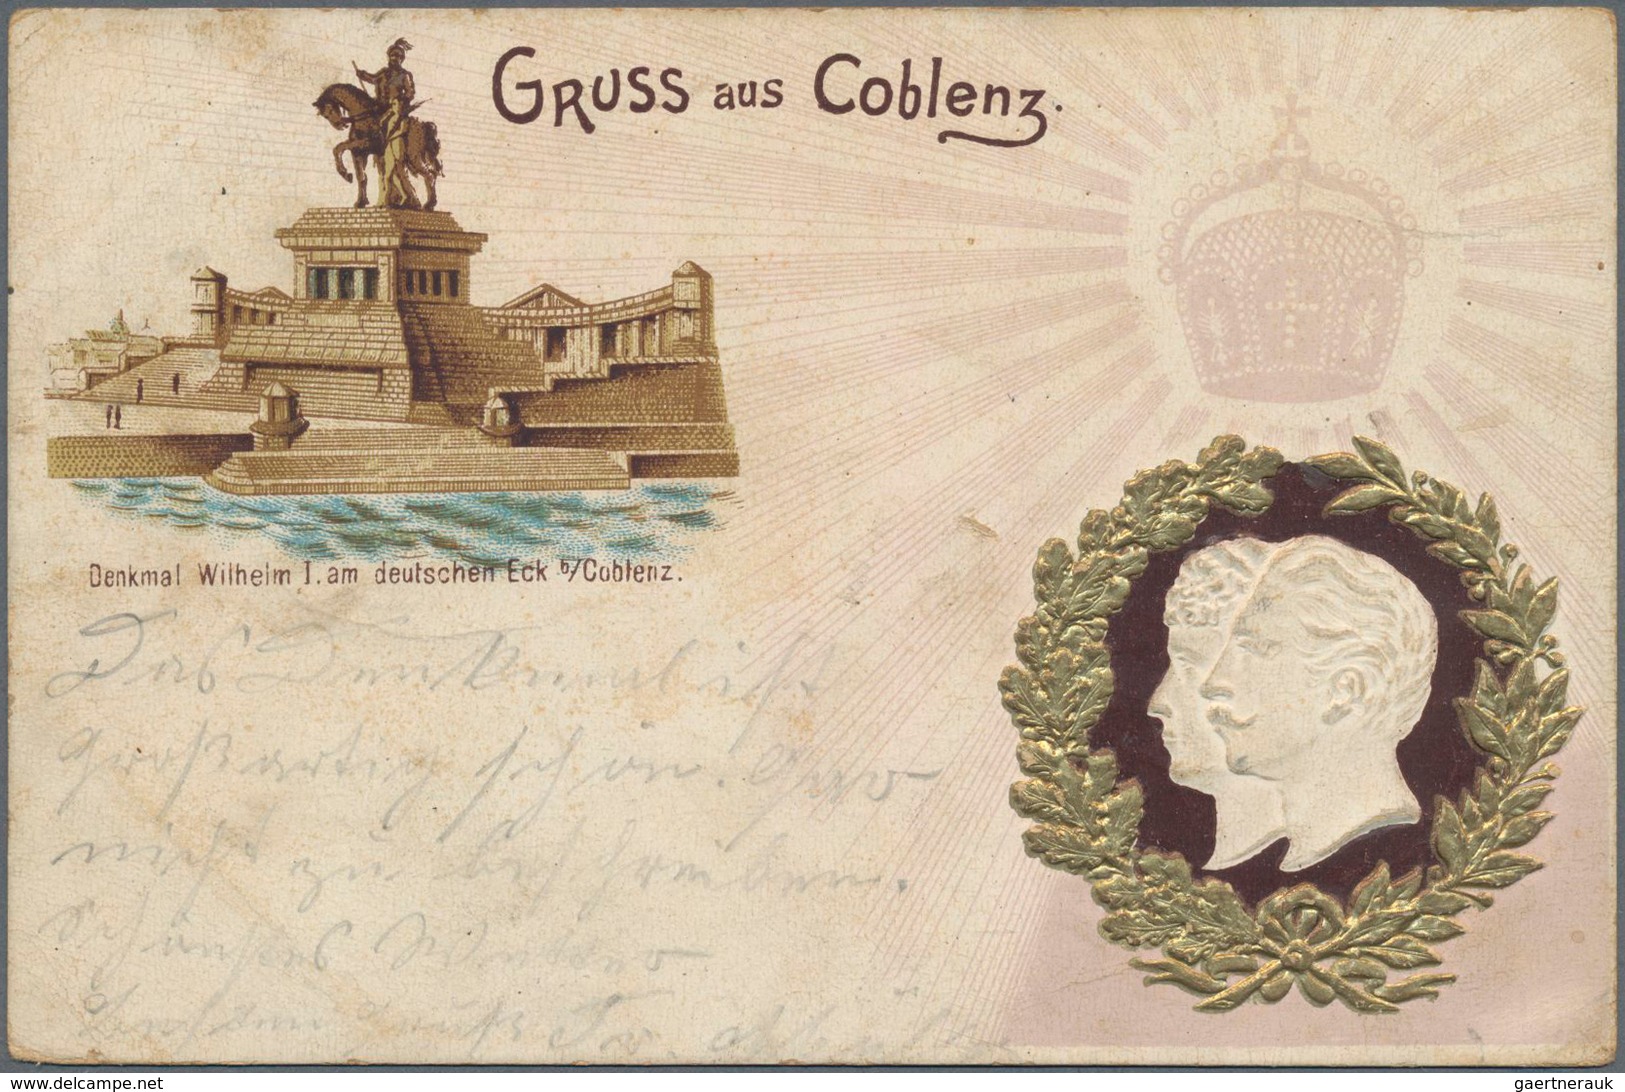 Ansichtskarten: Deutschland: 1900-60, Sammlung von Ansichtskarten im großen Album, dabei viele "Grus